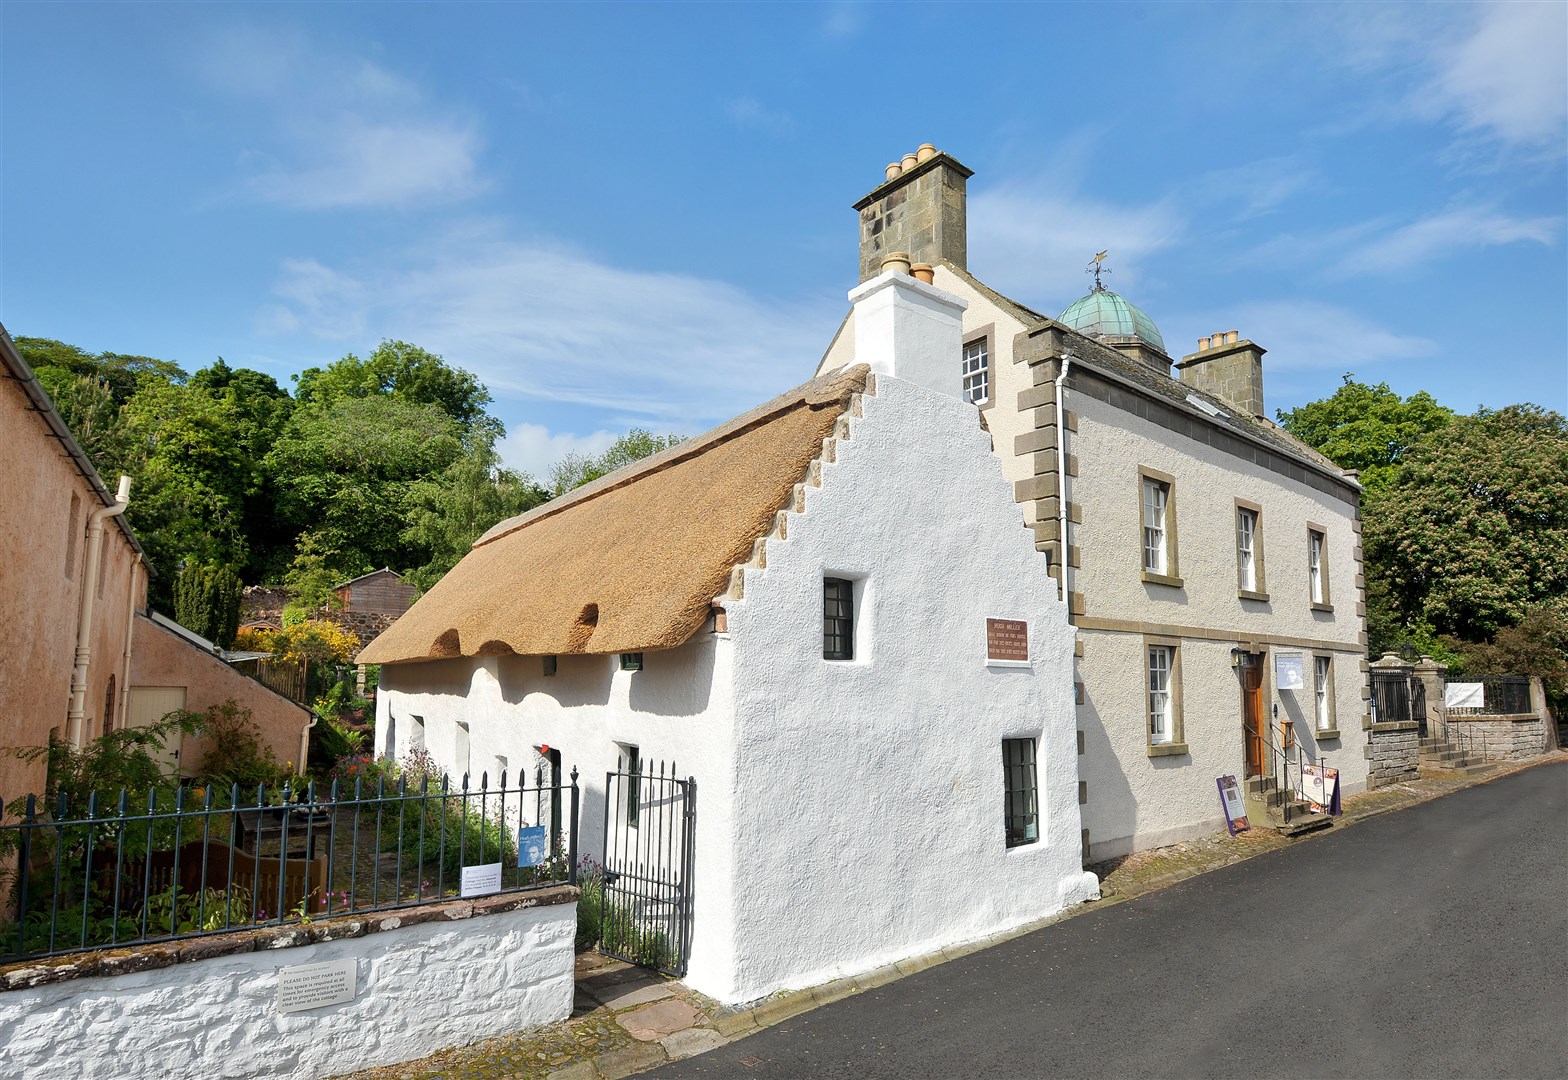 Hugh Miller's Cottage in Cromarty.